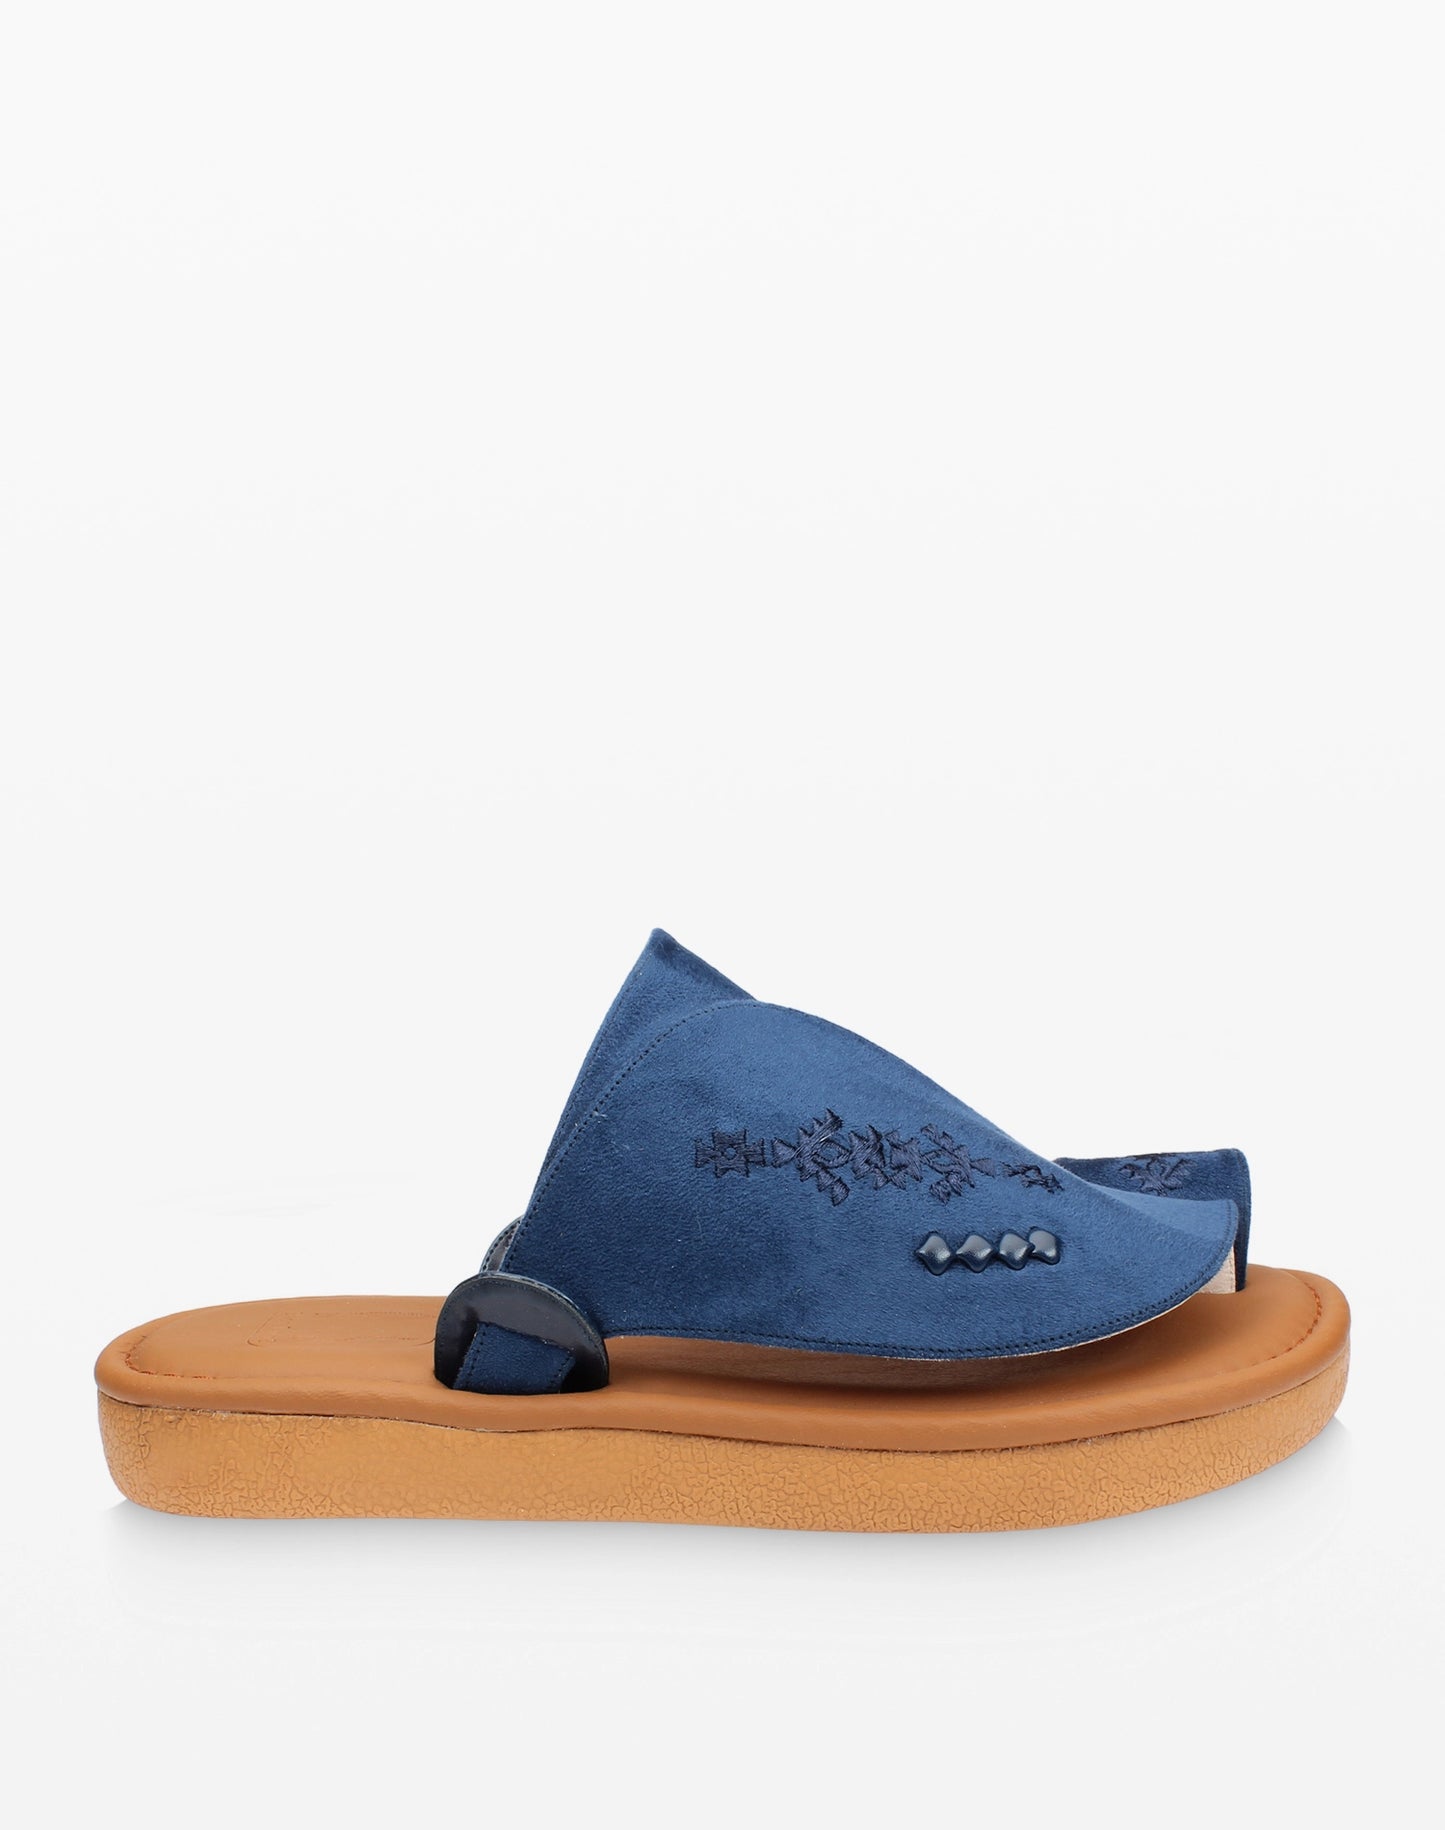 حذاء شرقي شامواه مطرز أزرق - صورة جانبية